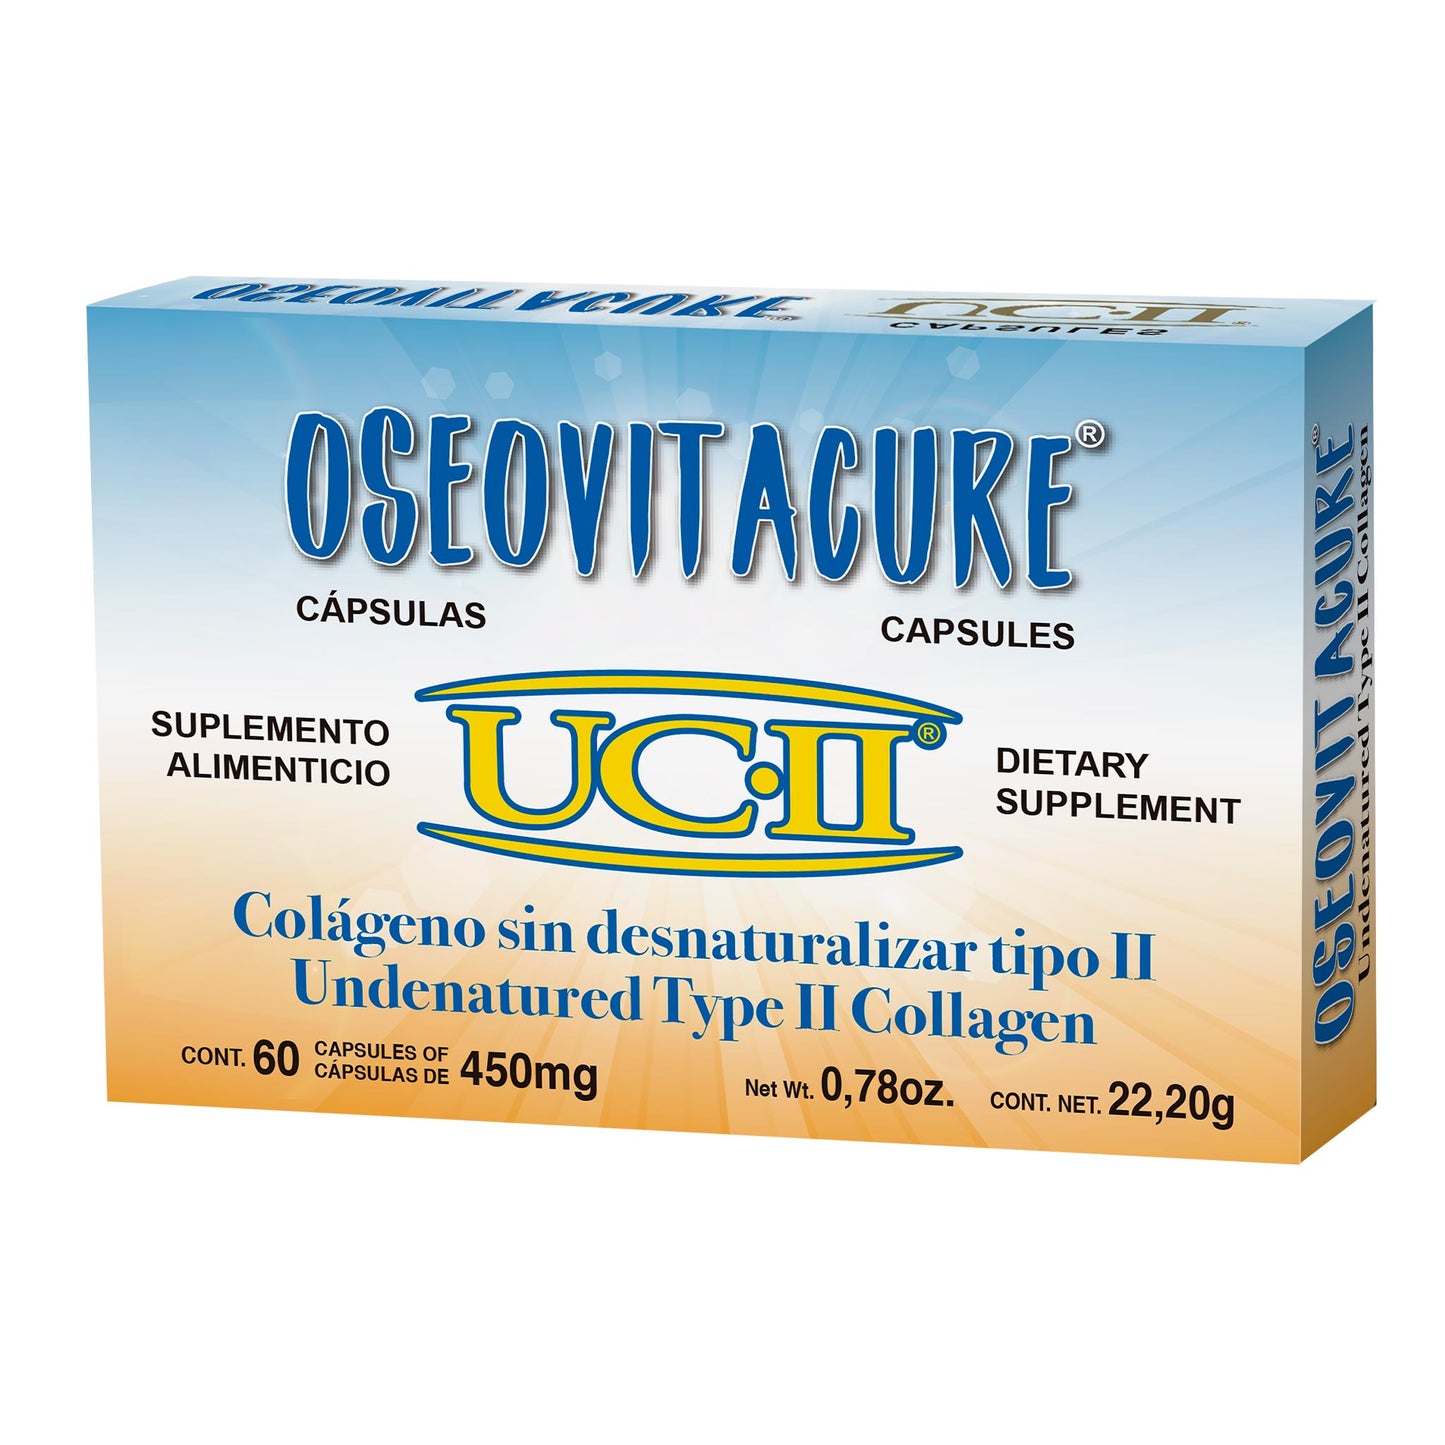 OSEOVITACURE ® 60 cápsulas